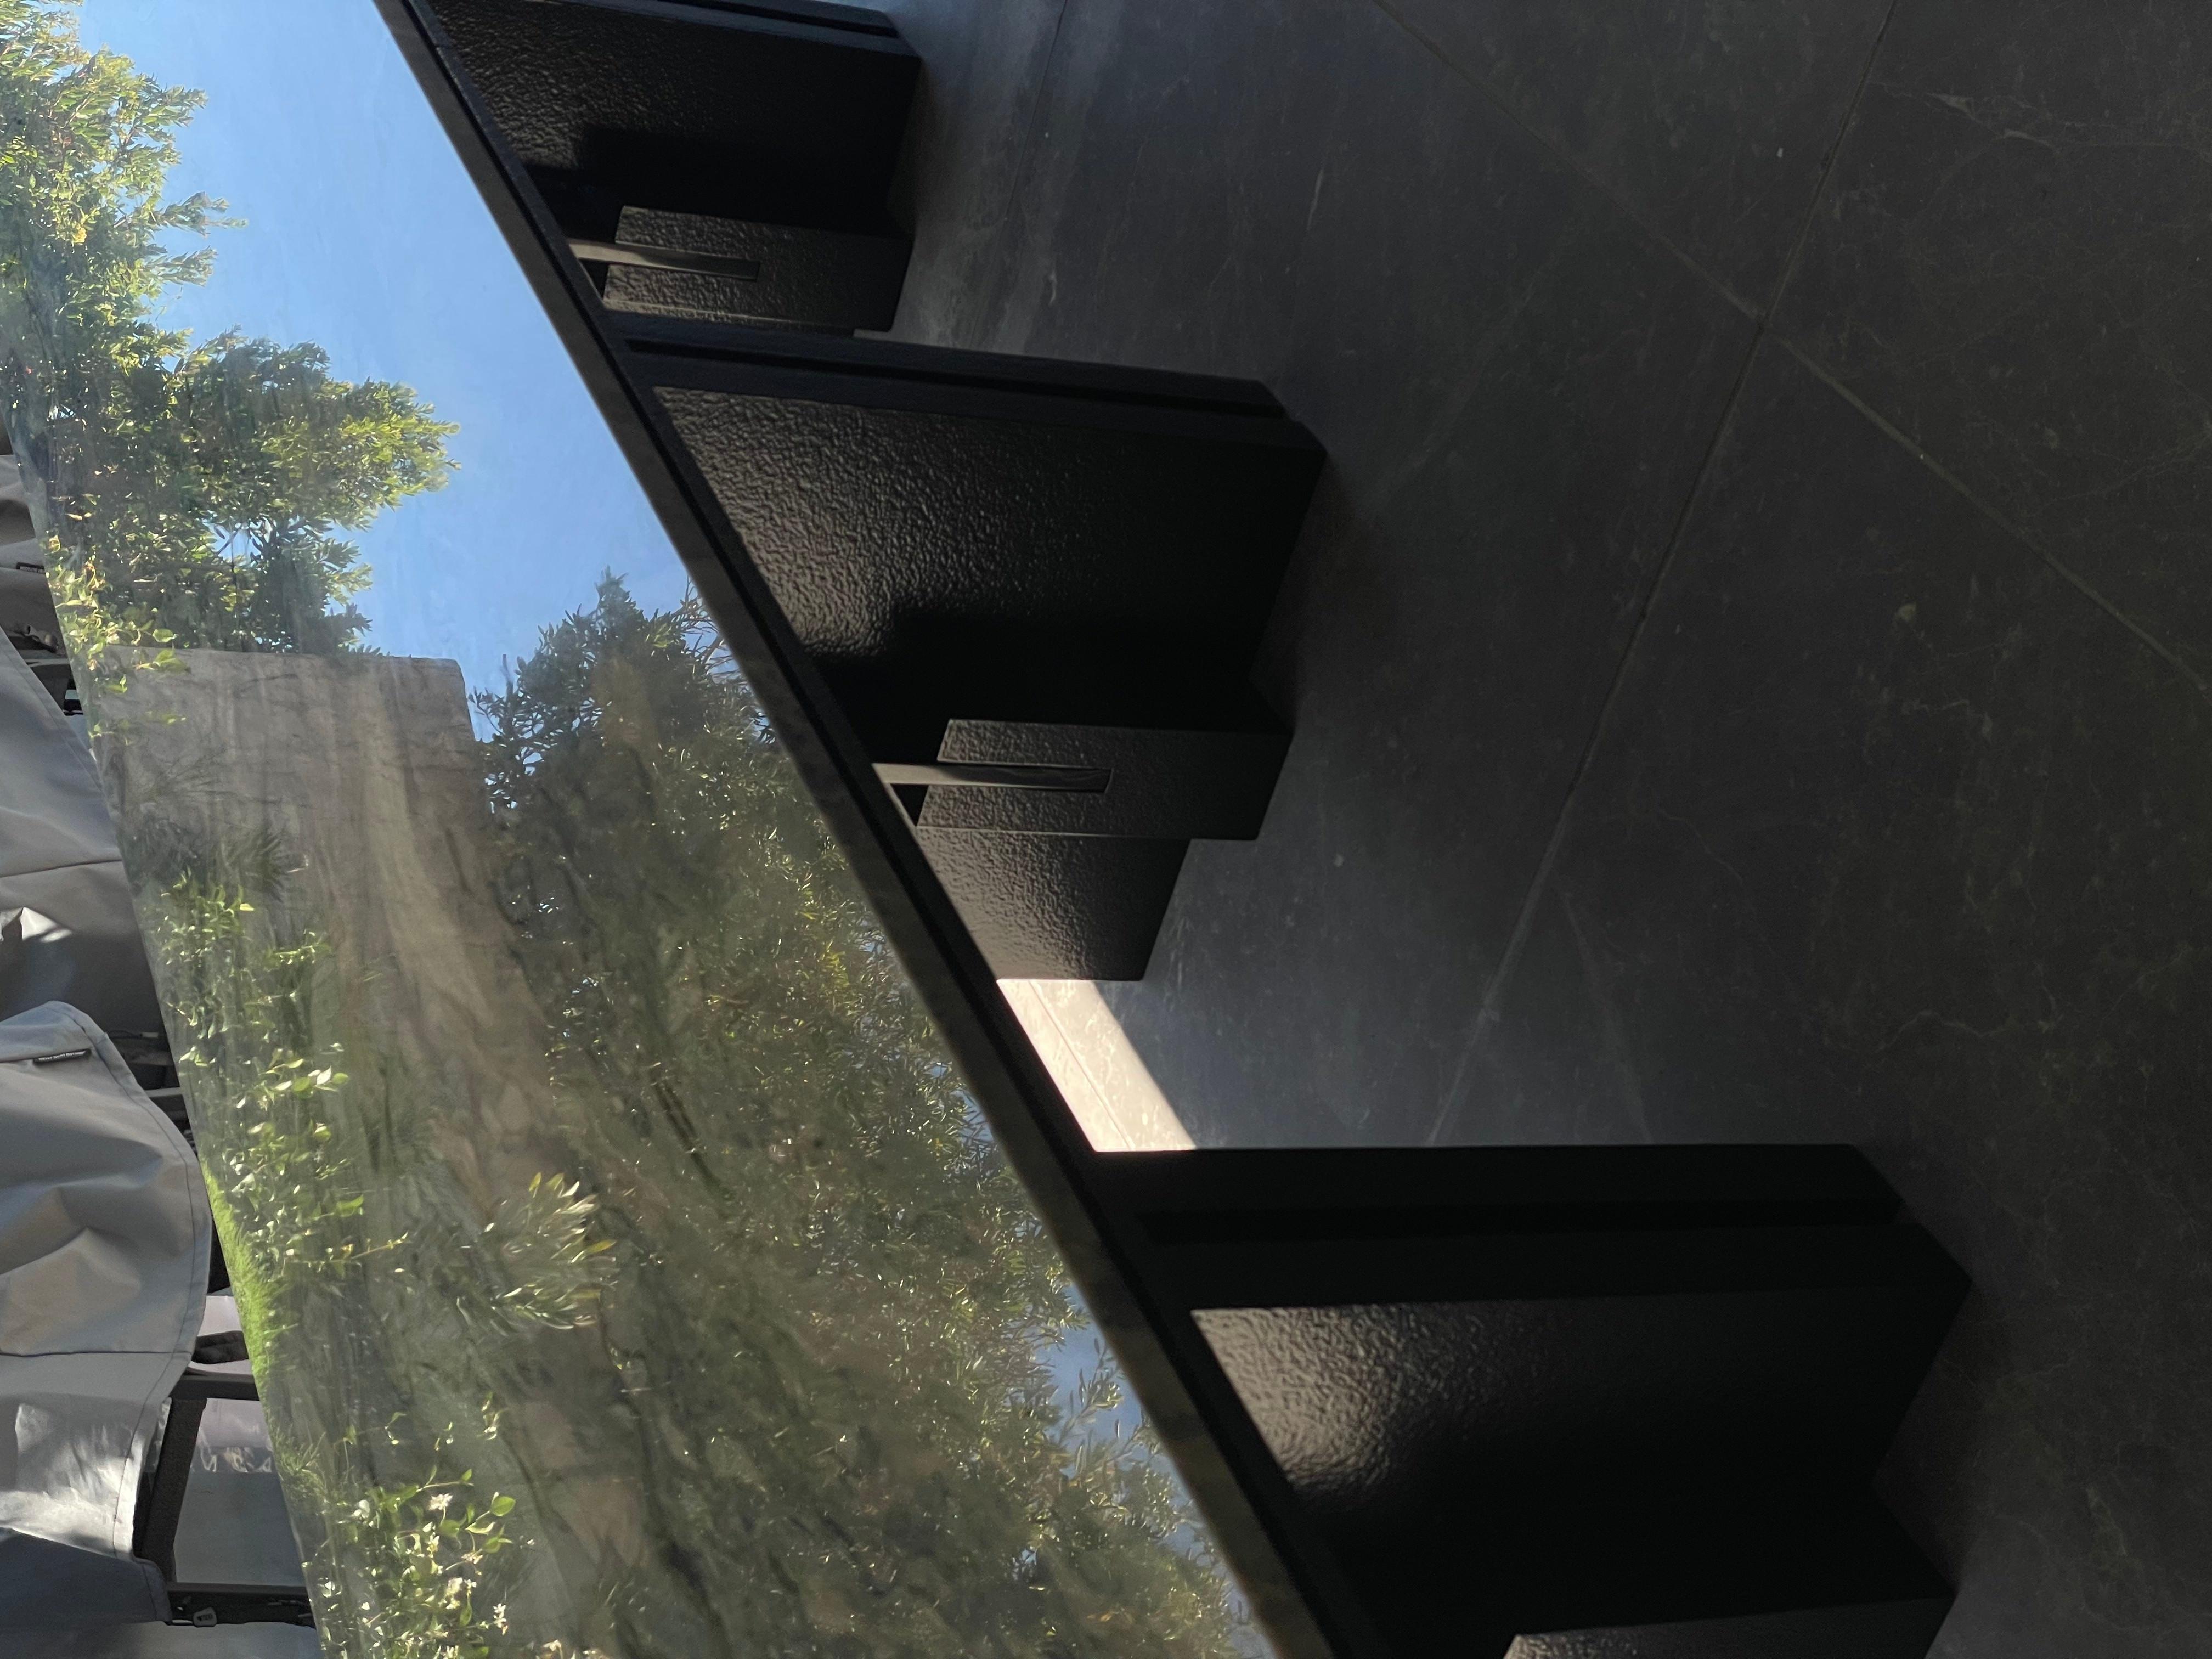 Amnis Esstisch von Deceres Studio
Aluminium 
Obsidian
Marmor 

2022  La Jolla, Kalifornien 

Inspiriert durch das nahegelegene Salk Institute von Louis Kahn, bezieht sich der Amnis Table speziell auf die Architektur des Platzes im Zentrum des